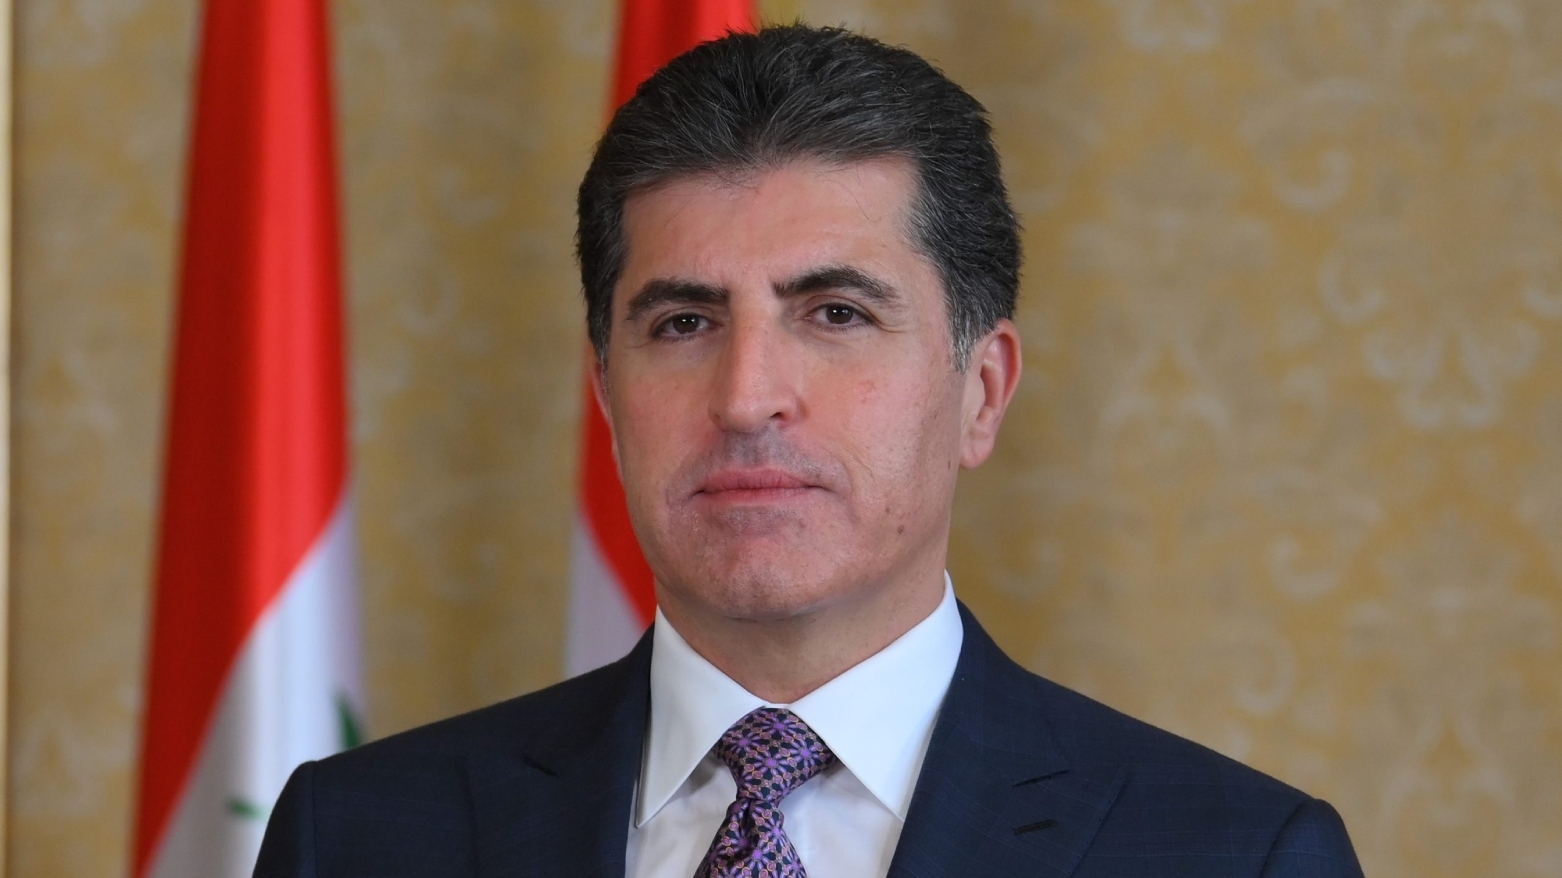 رئيس إقليم كوردستان يُعزّي بوفاة وزير الإعلام الأردني الأسبق صالح القلاب